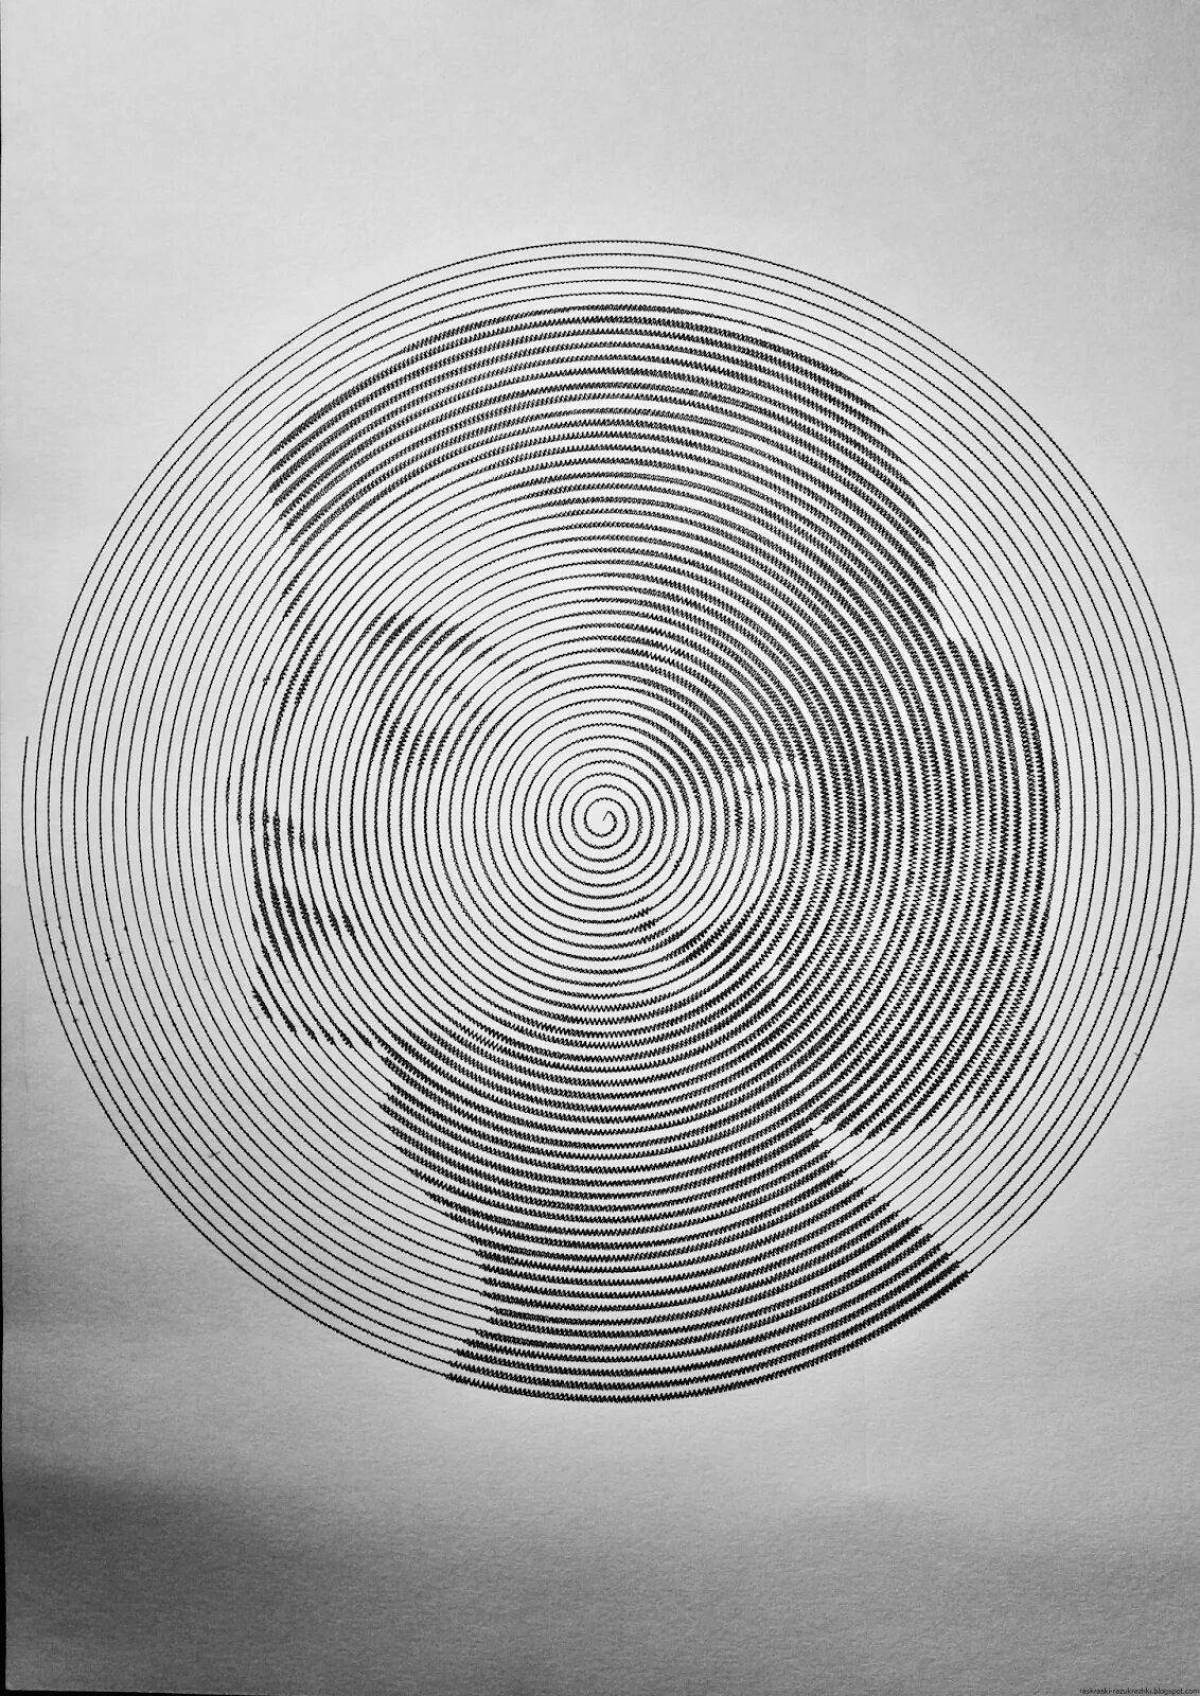 Gorgeous spiral portrait